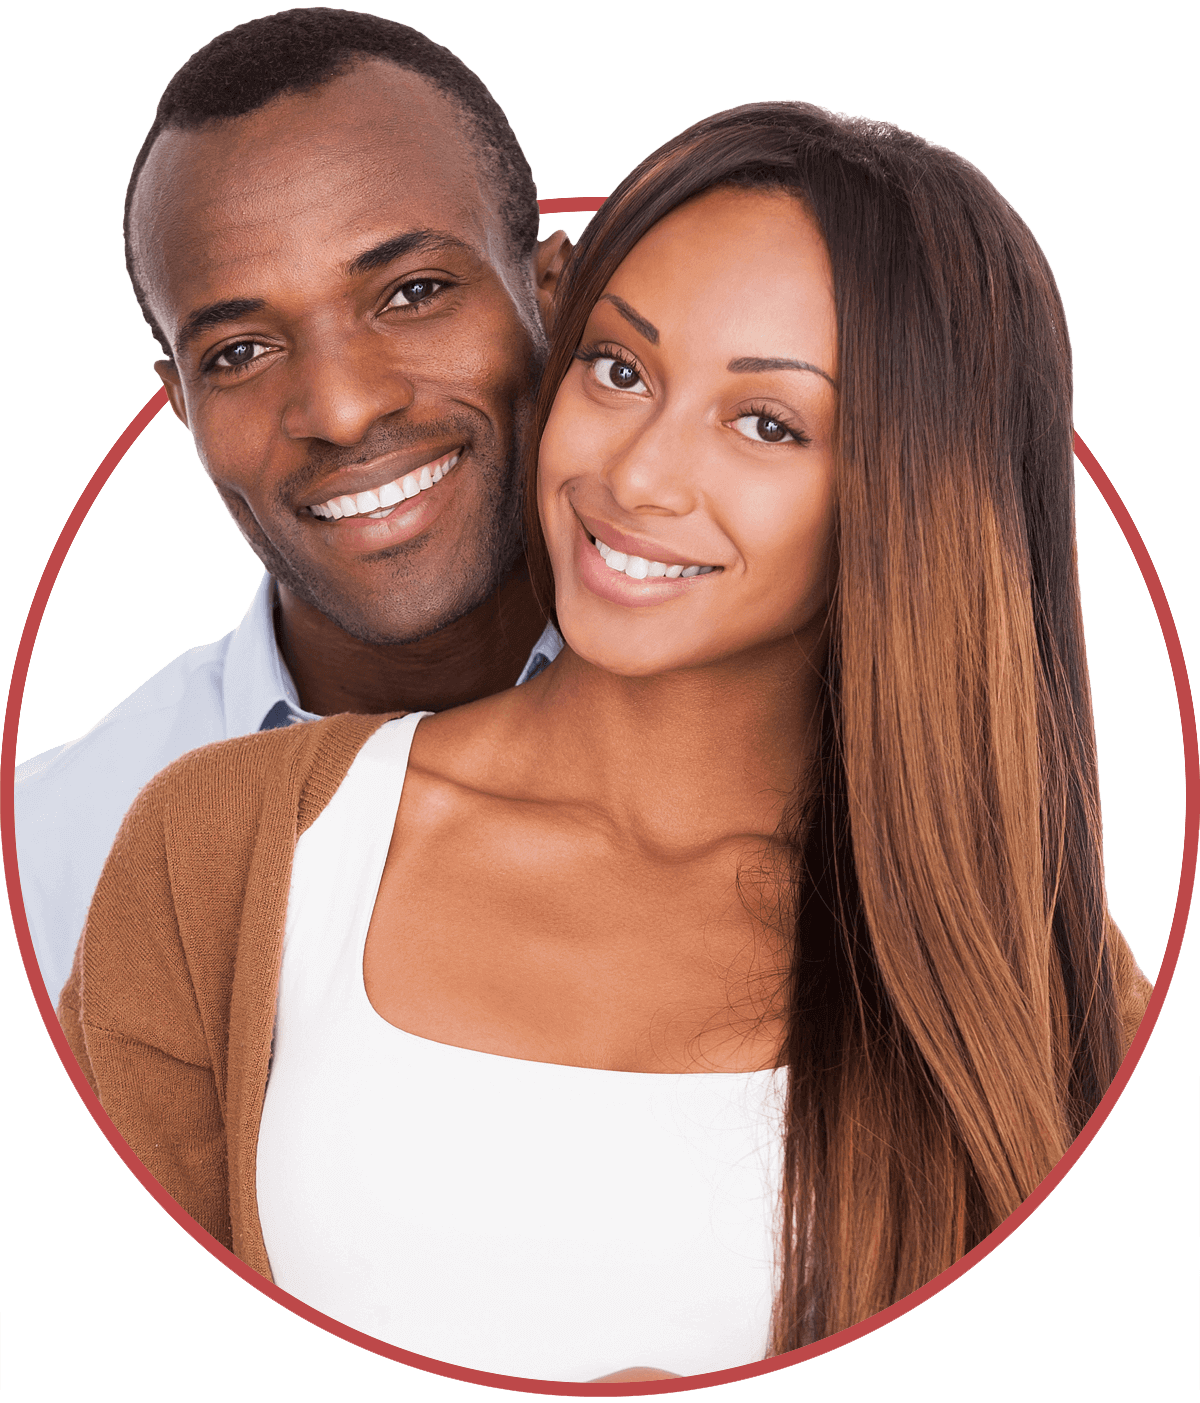 Christian black dating site über 50